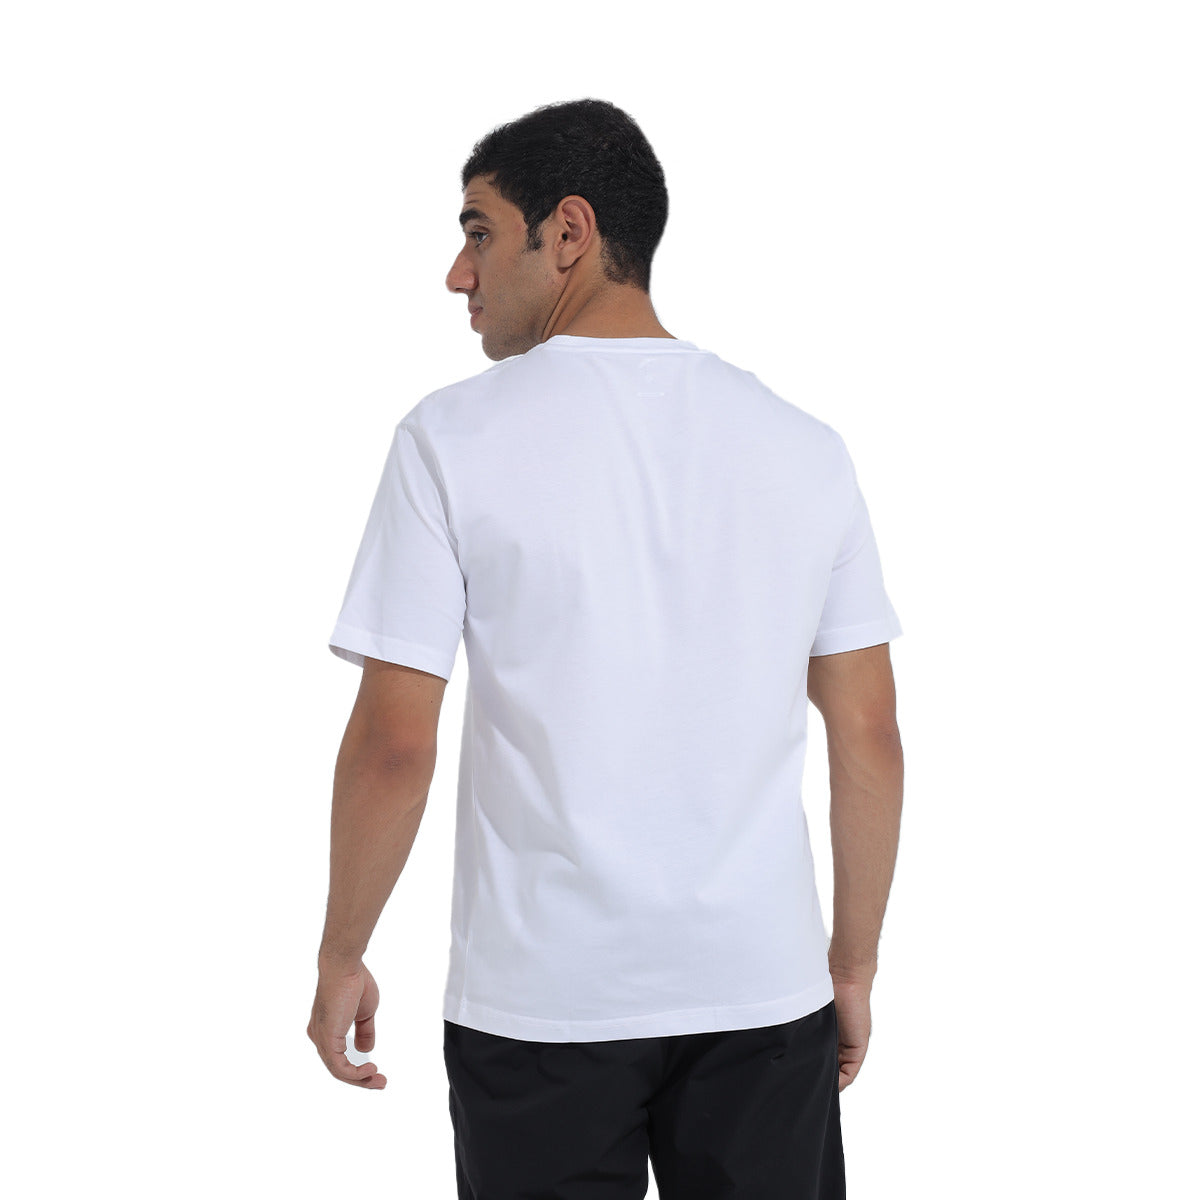 Anta Lifestyle T-Shirt For Men, White